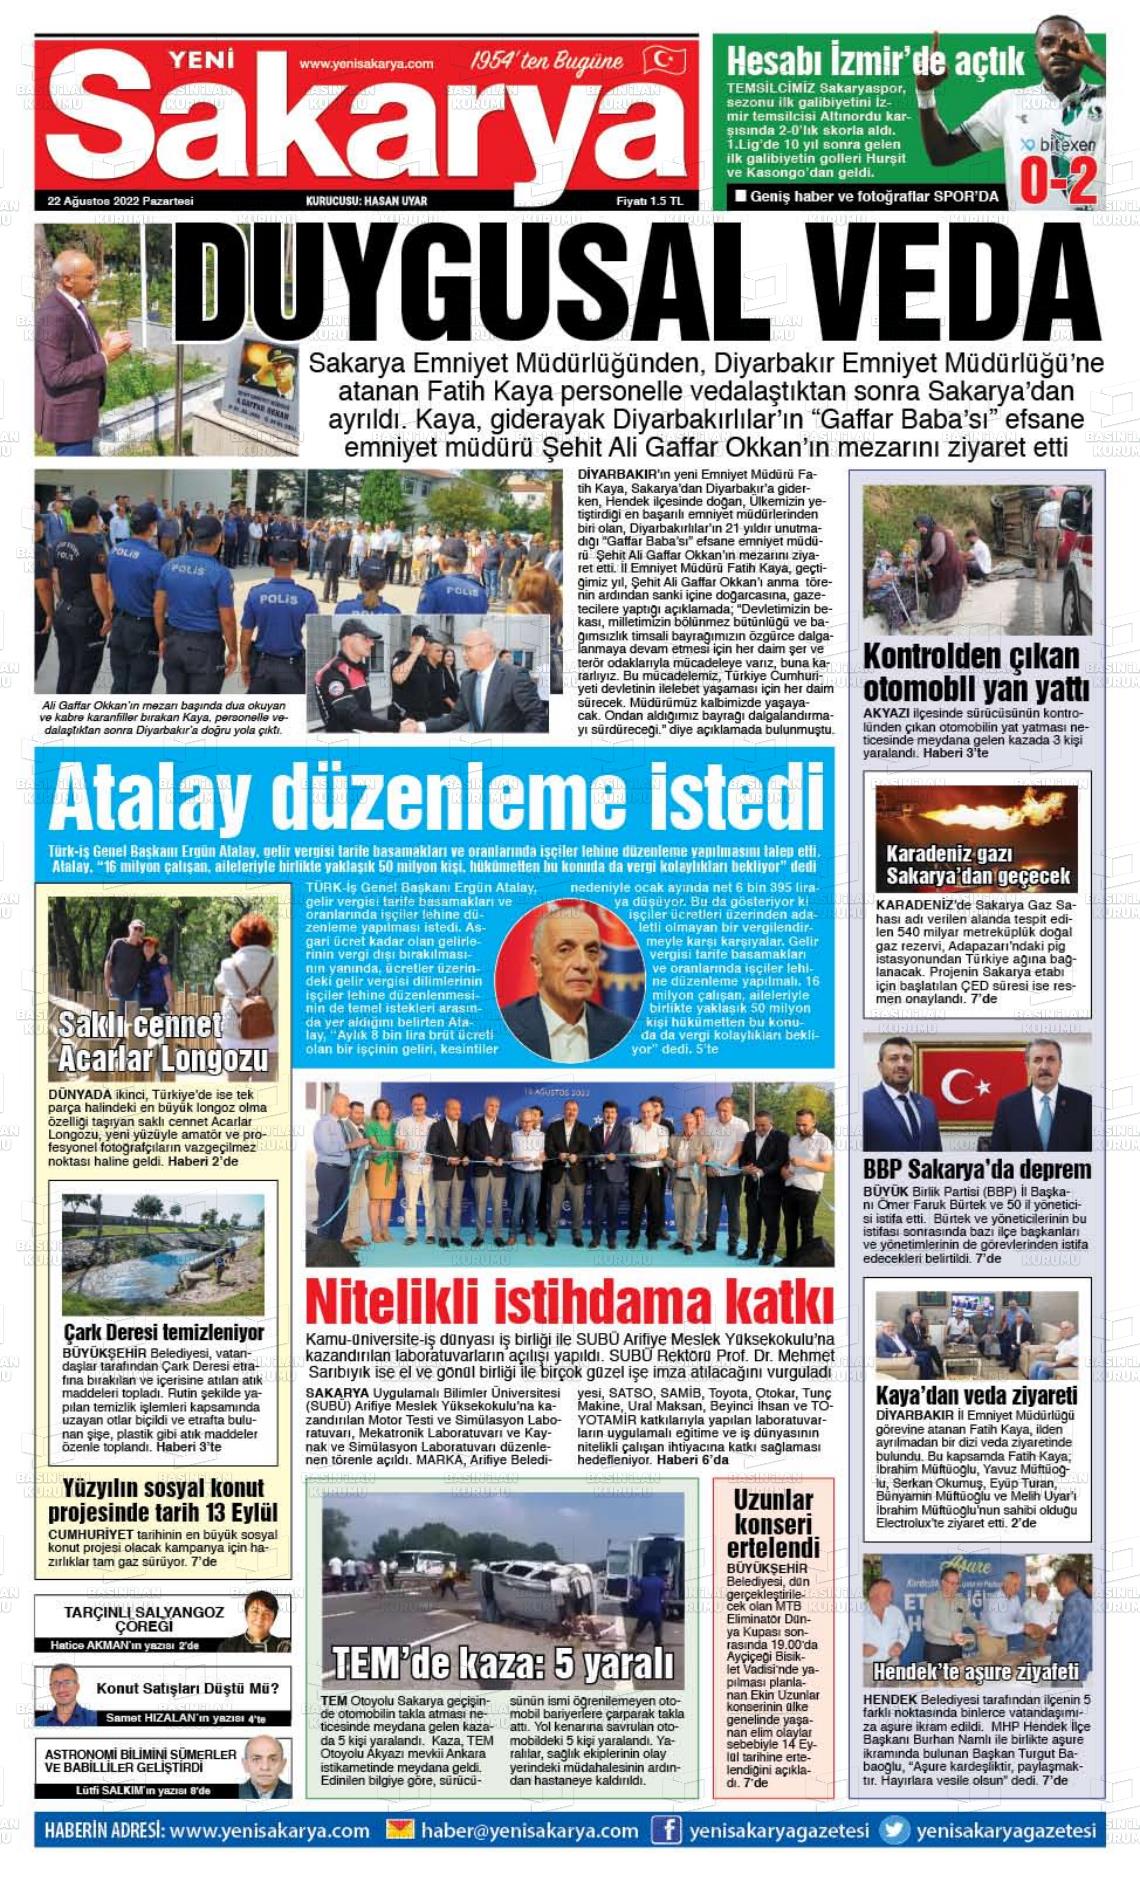 22 Ağustos 2022 Yeni Sakarya Gazete Manşeti